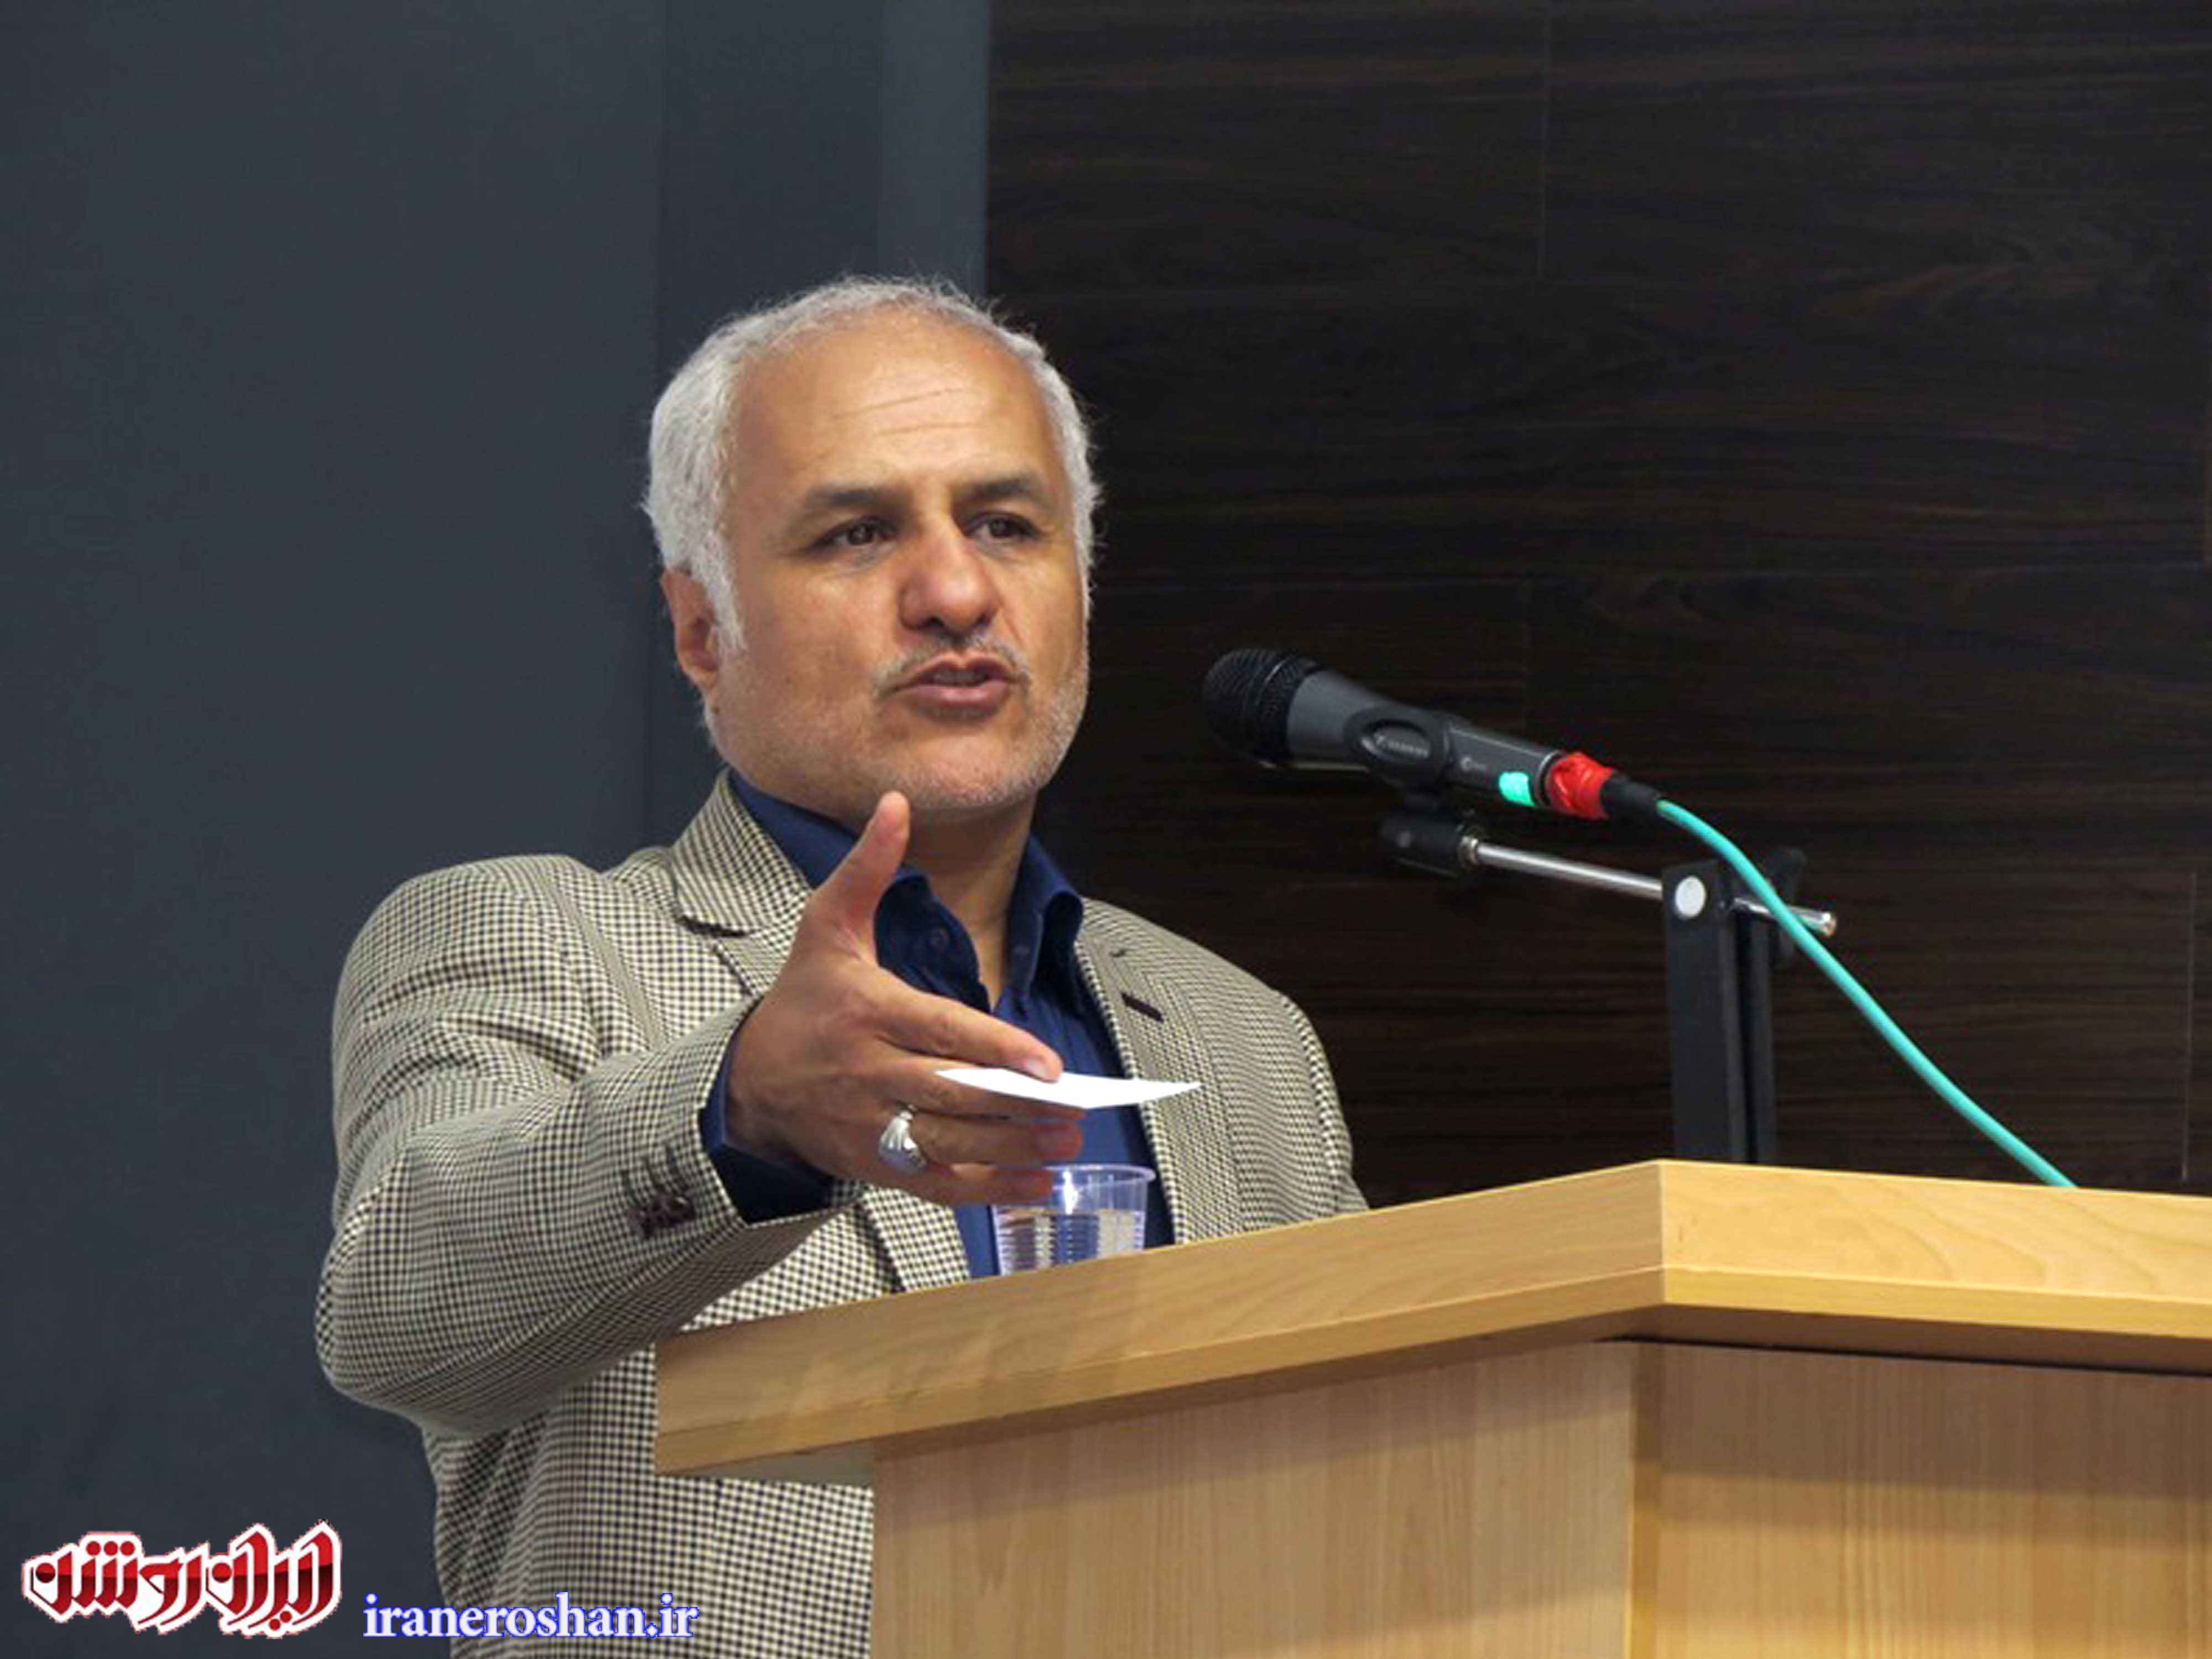 سخنرانی استاد حسن عباسی در دانشکده علوم قرآنی قم ـ به نام اسلام به کام لیبرالیسم